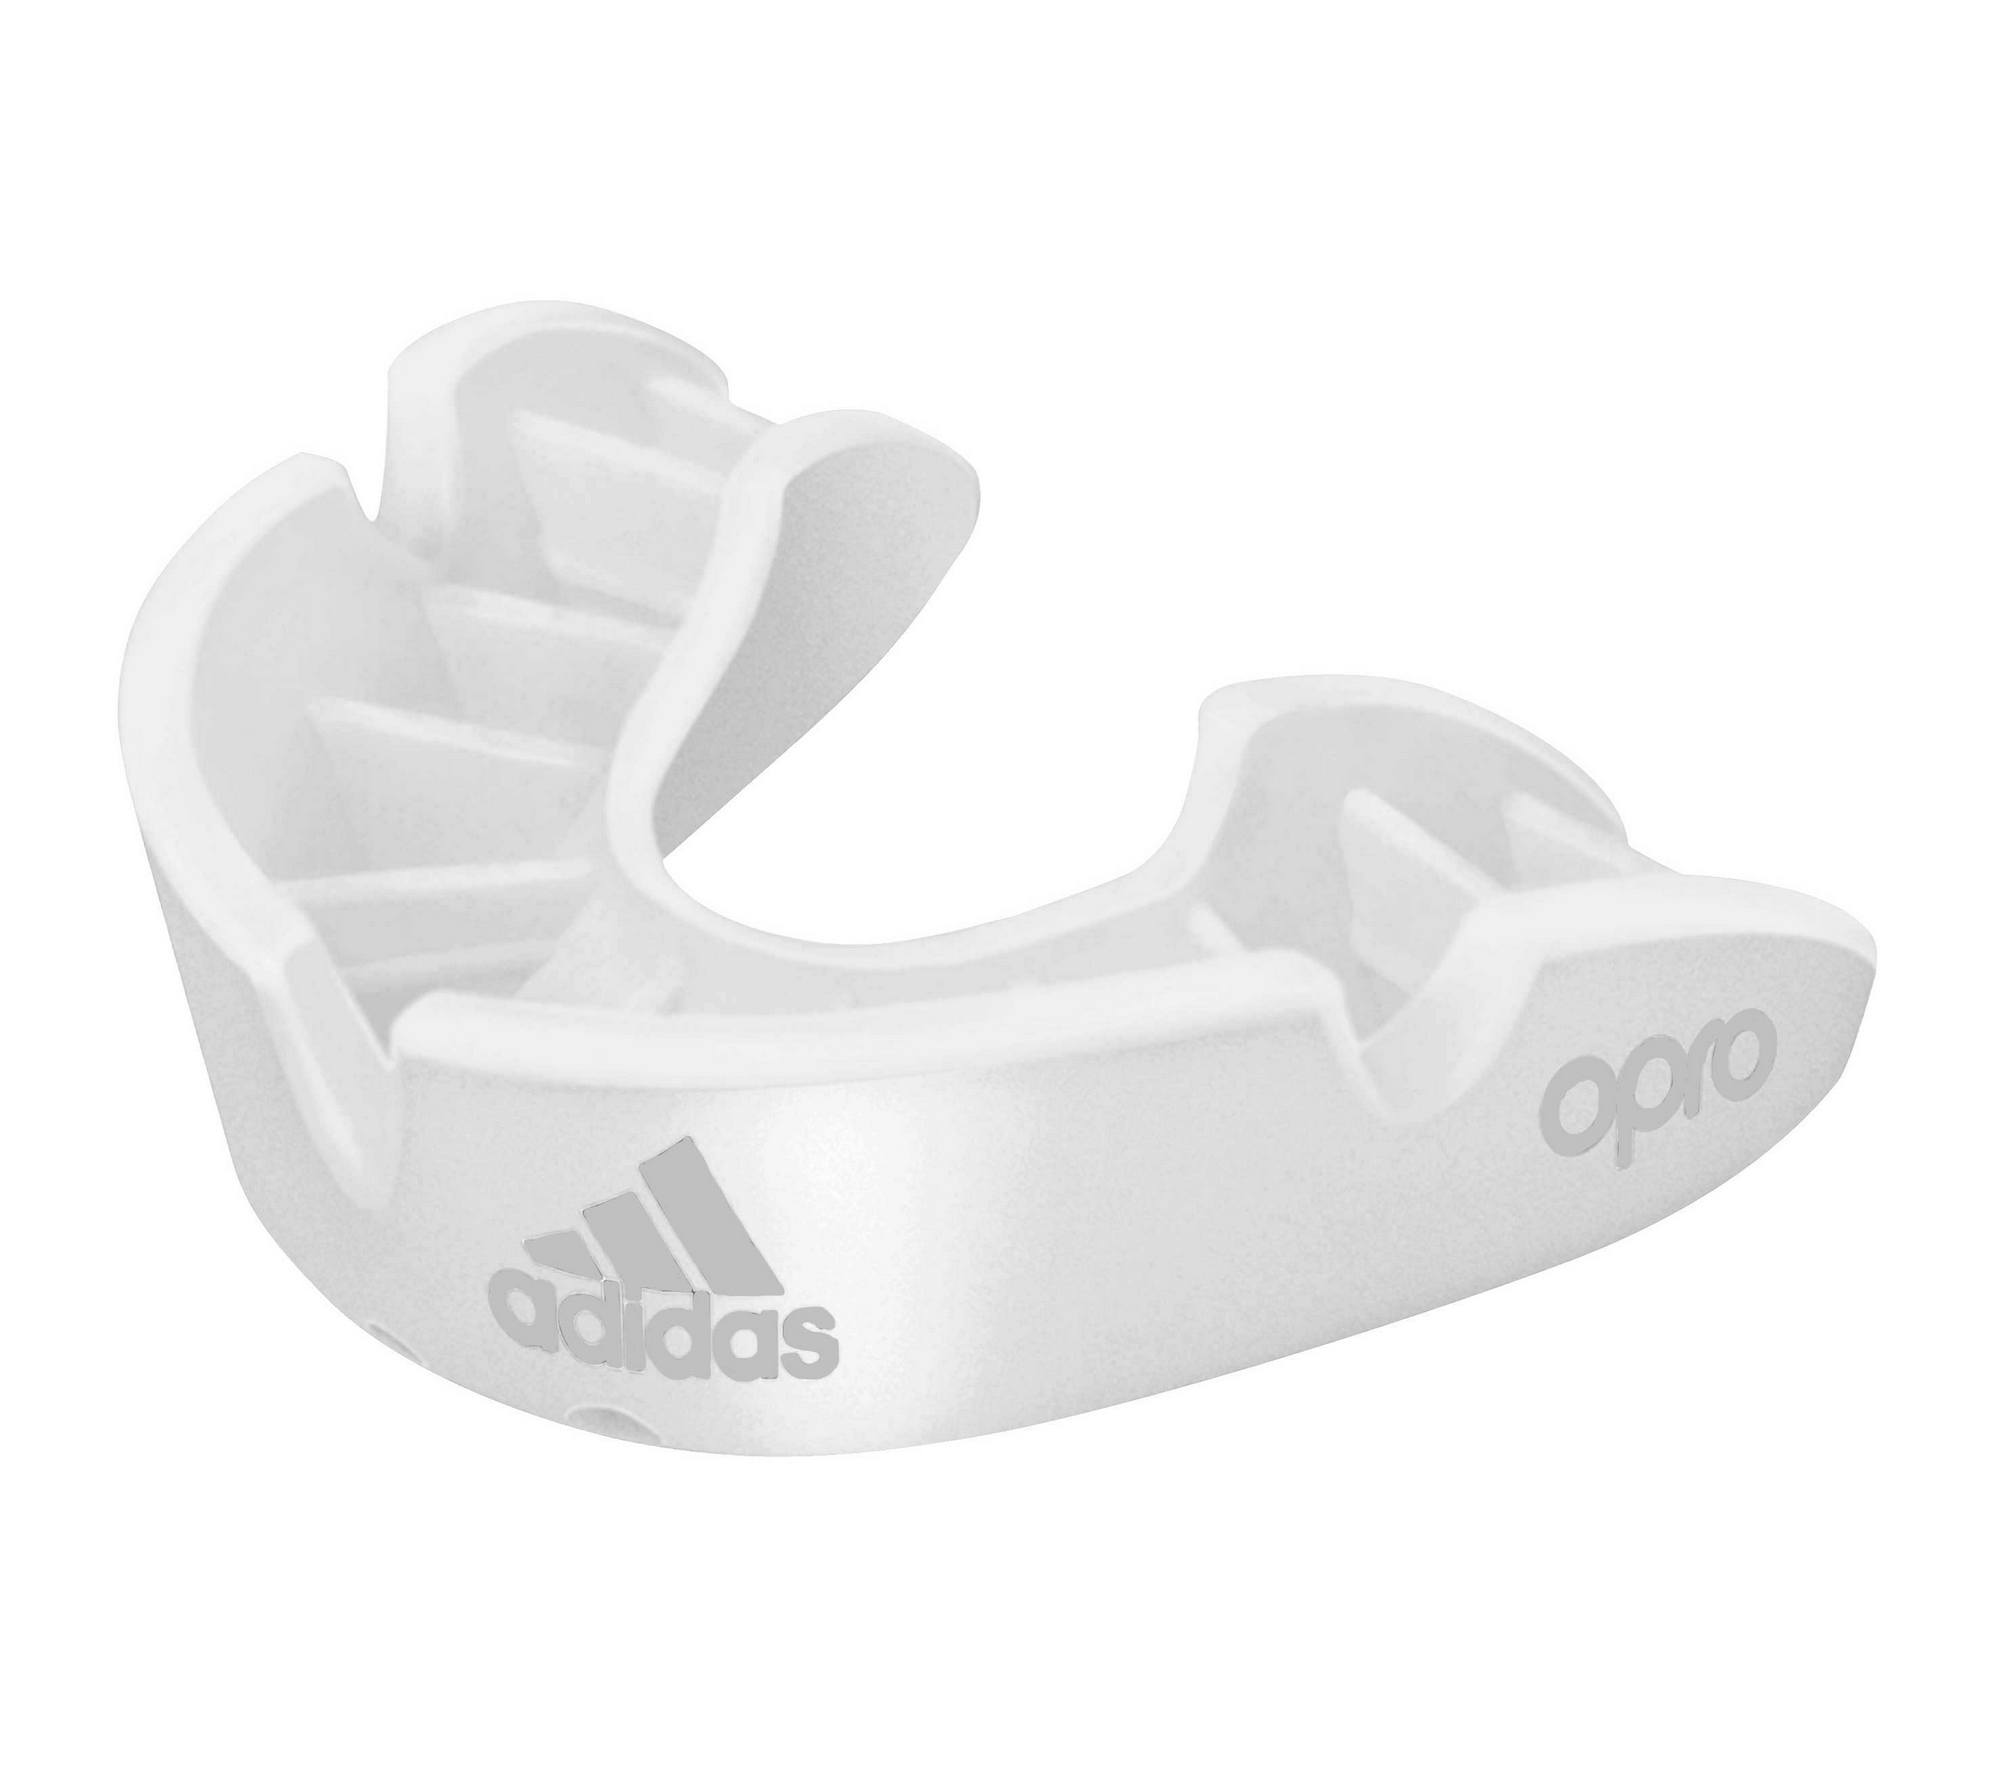 Капа одночелюстная Adidas adiBP31 Opro Bronze Gen4 Self-Fit Mouthguard белая,  - купить со скидкой